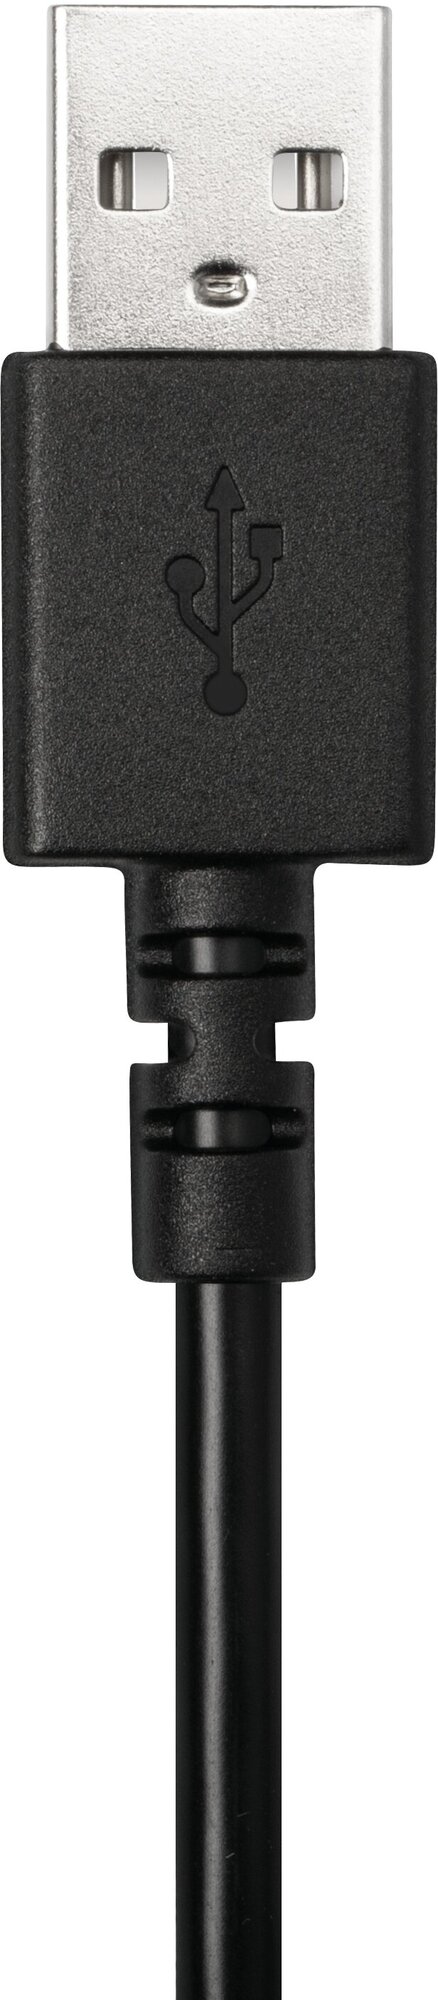 Гарнитура Logitech H390 (USB, элементы управления на кабеле, кабель 2.33м) (арт. 981-000803, M/N: A00146) - фото №9